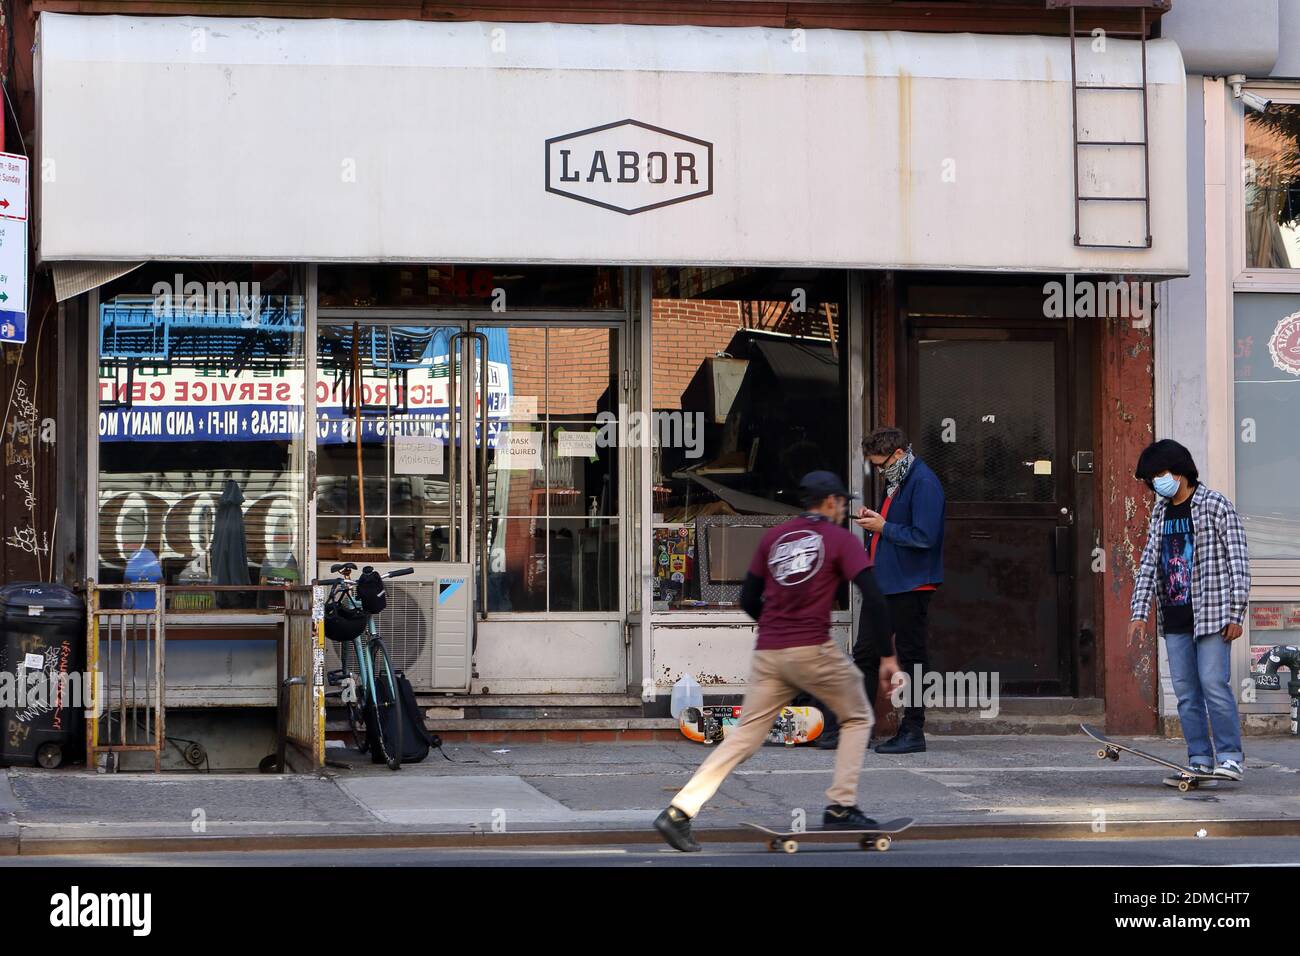 Labor Skateboard Shop, 46 Canal St, New York. Façade extérieure d'un magasin de skateboard dans le quartier chinois de 'Dimes Square' de Manhattan/Lower East Side Banque D'Images